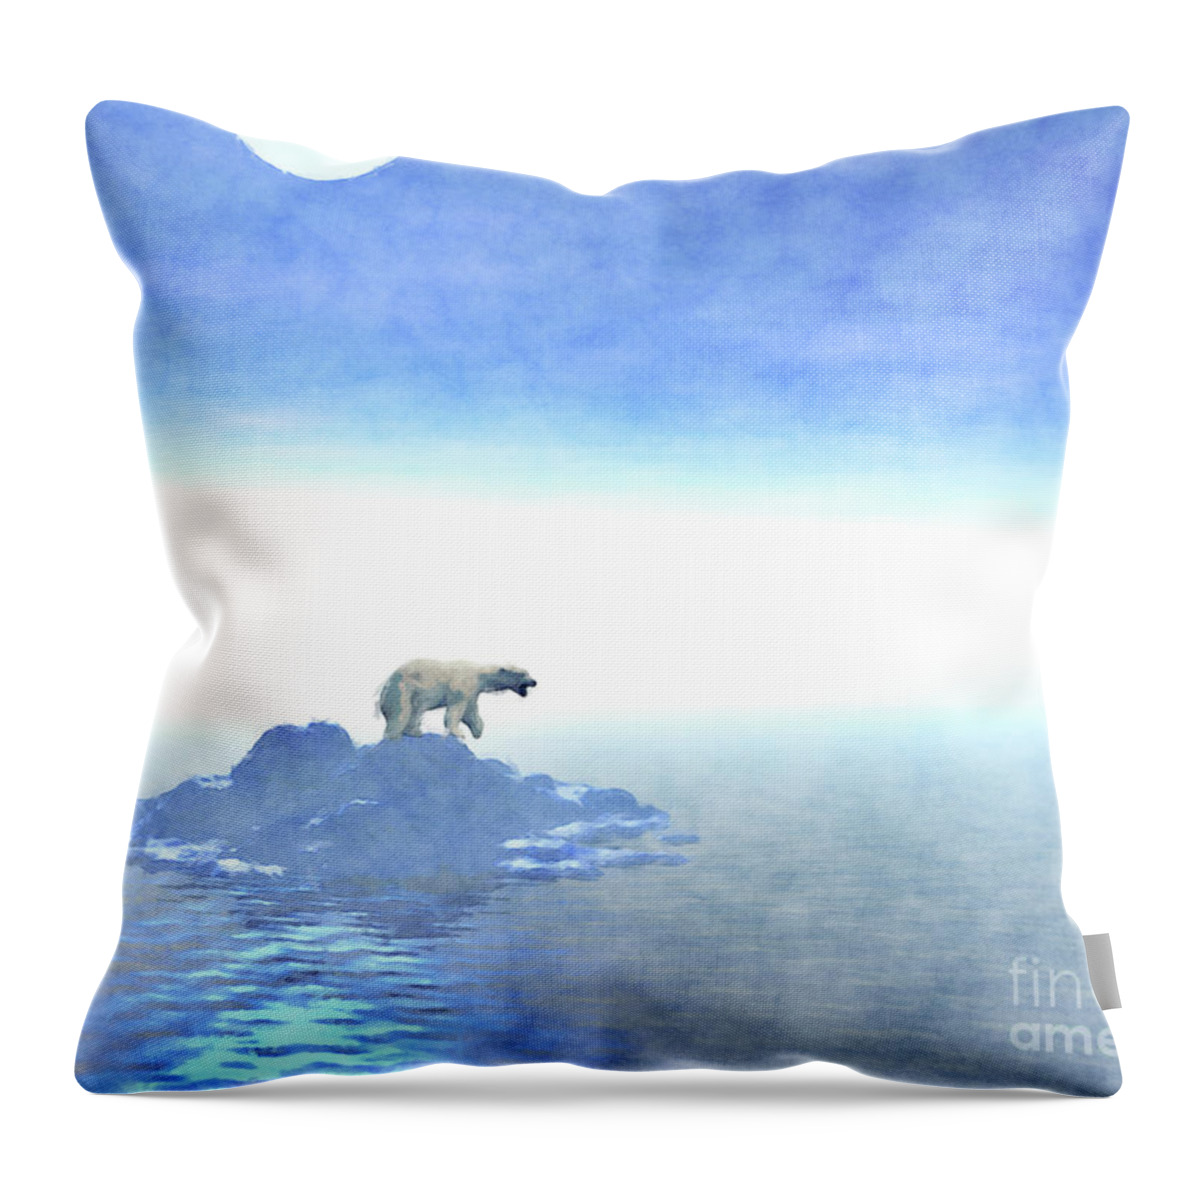 Polar Bear Throw Pillow featuring the digital art Polar Bear On Iceberg by Phil Perkins